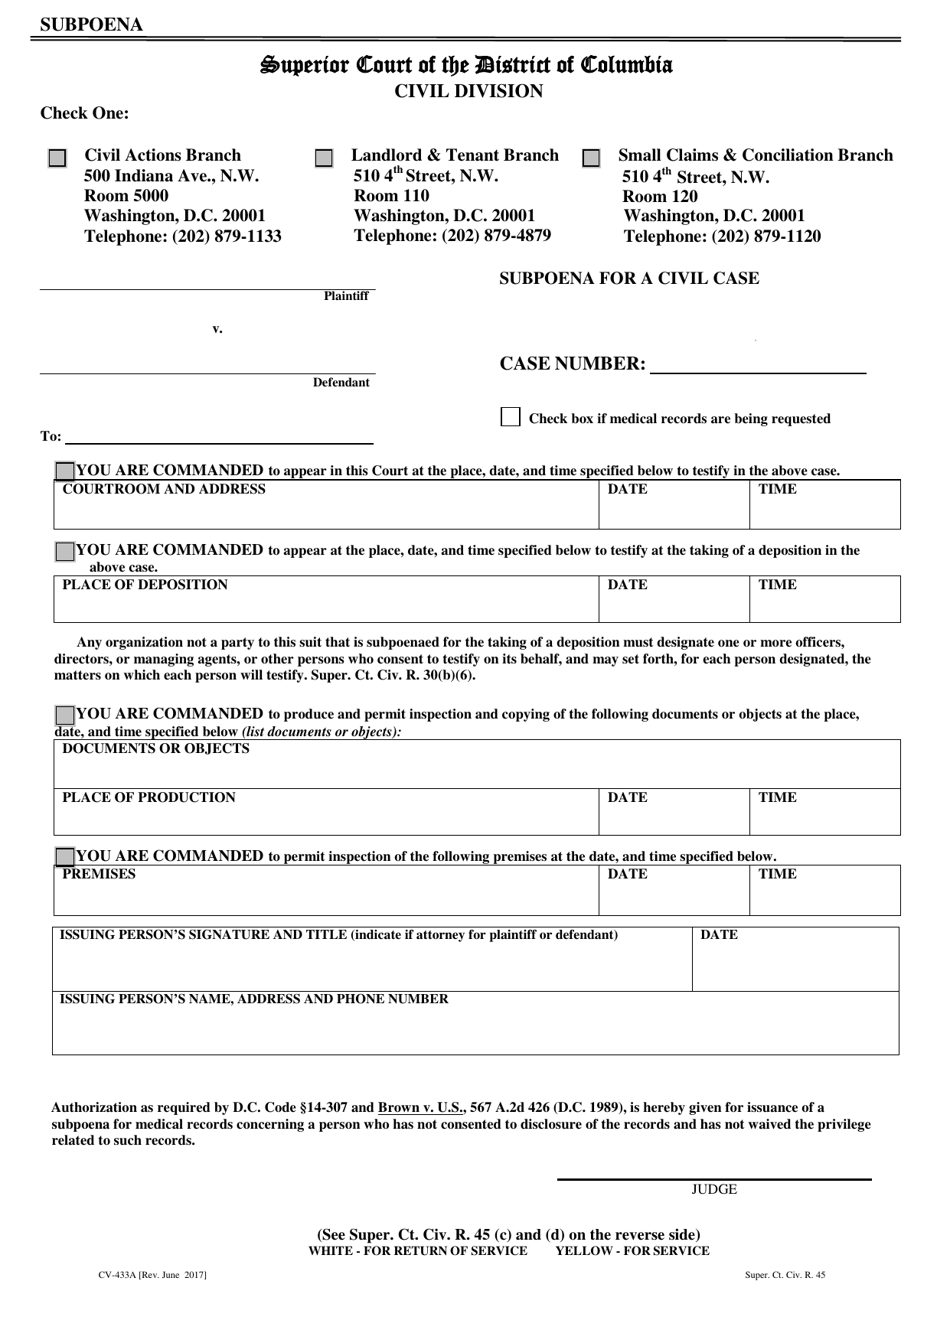 Form CV-433A Subpoena for a Civil Case - Washington, D.C., Page 1